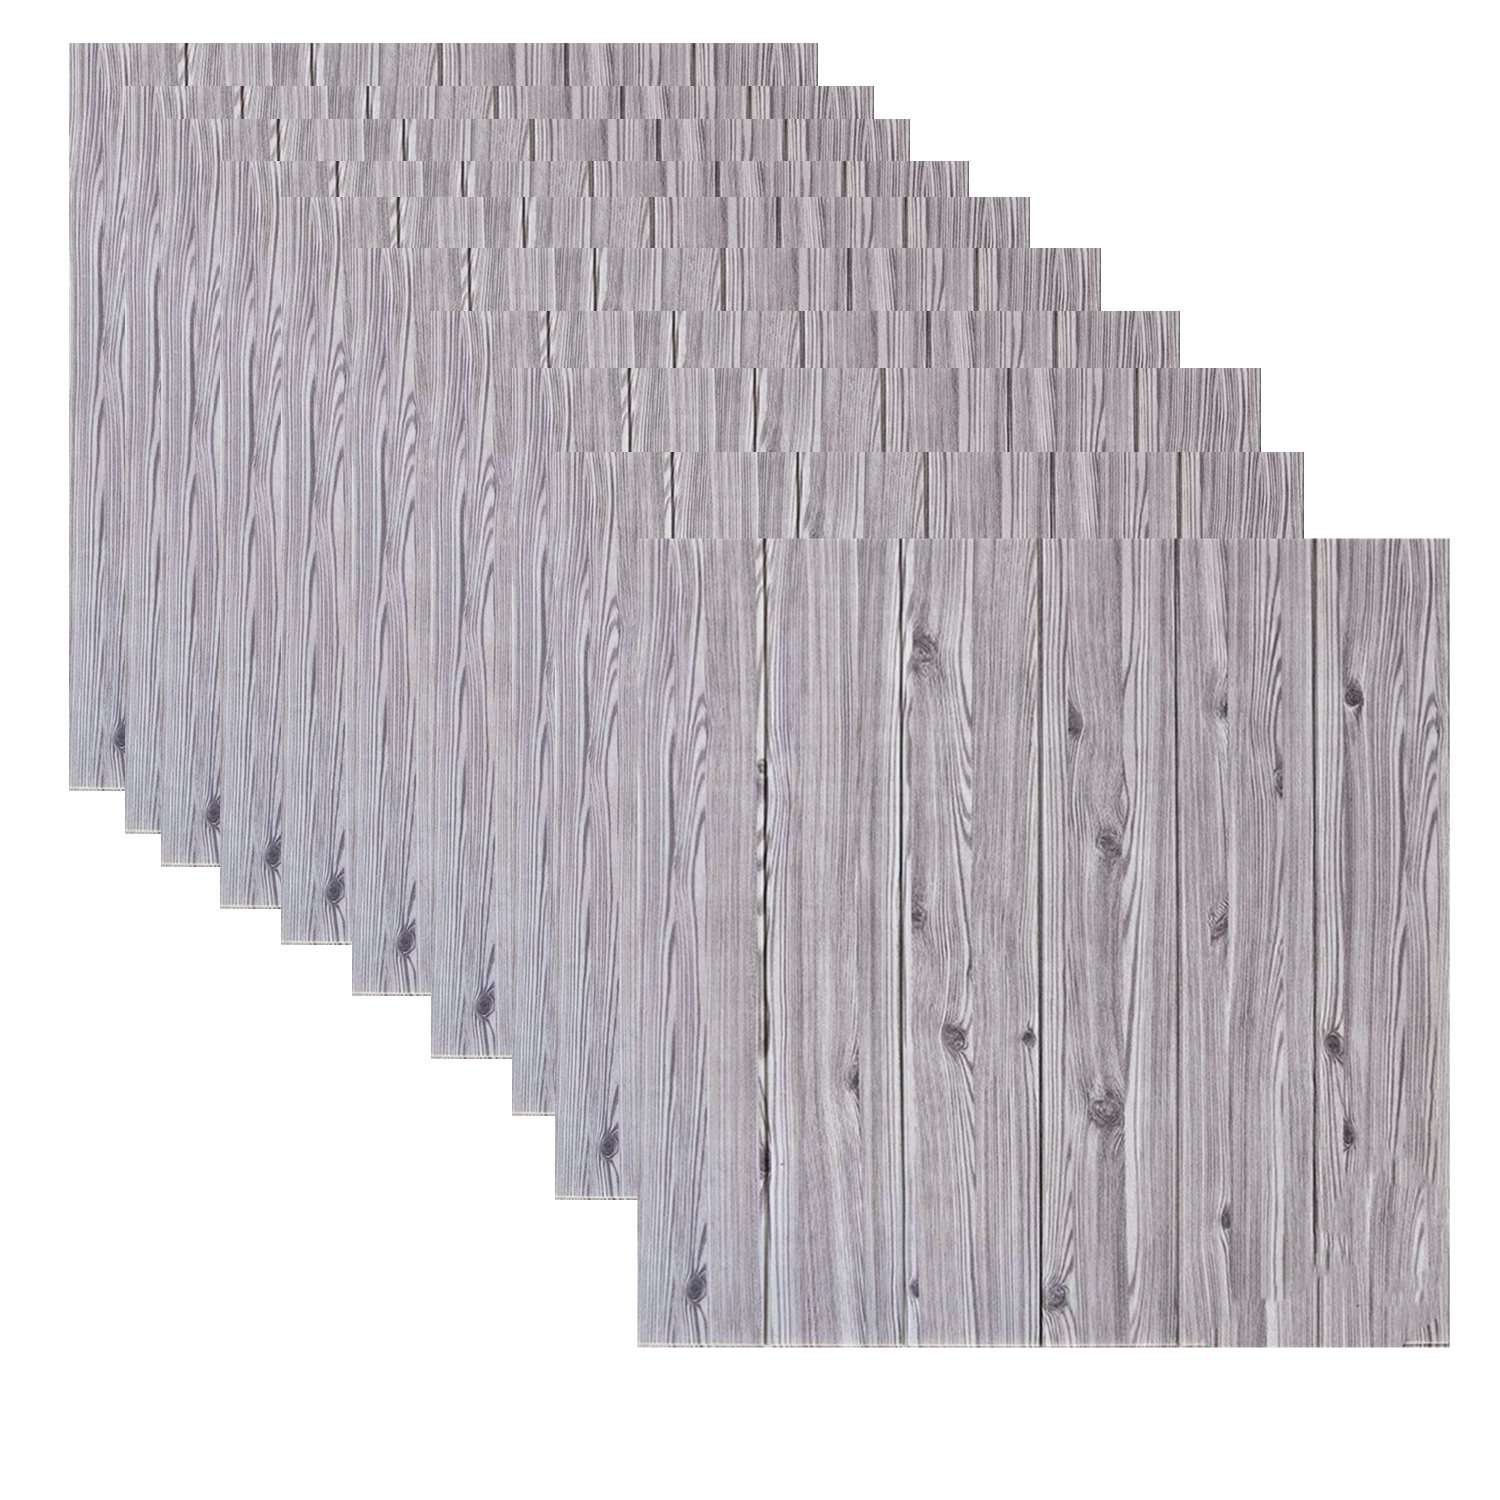 10Pcs Self-Adhesive 3D Foam Wallpaper Panel - Wood Grain